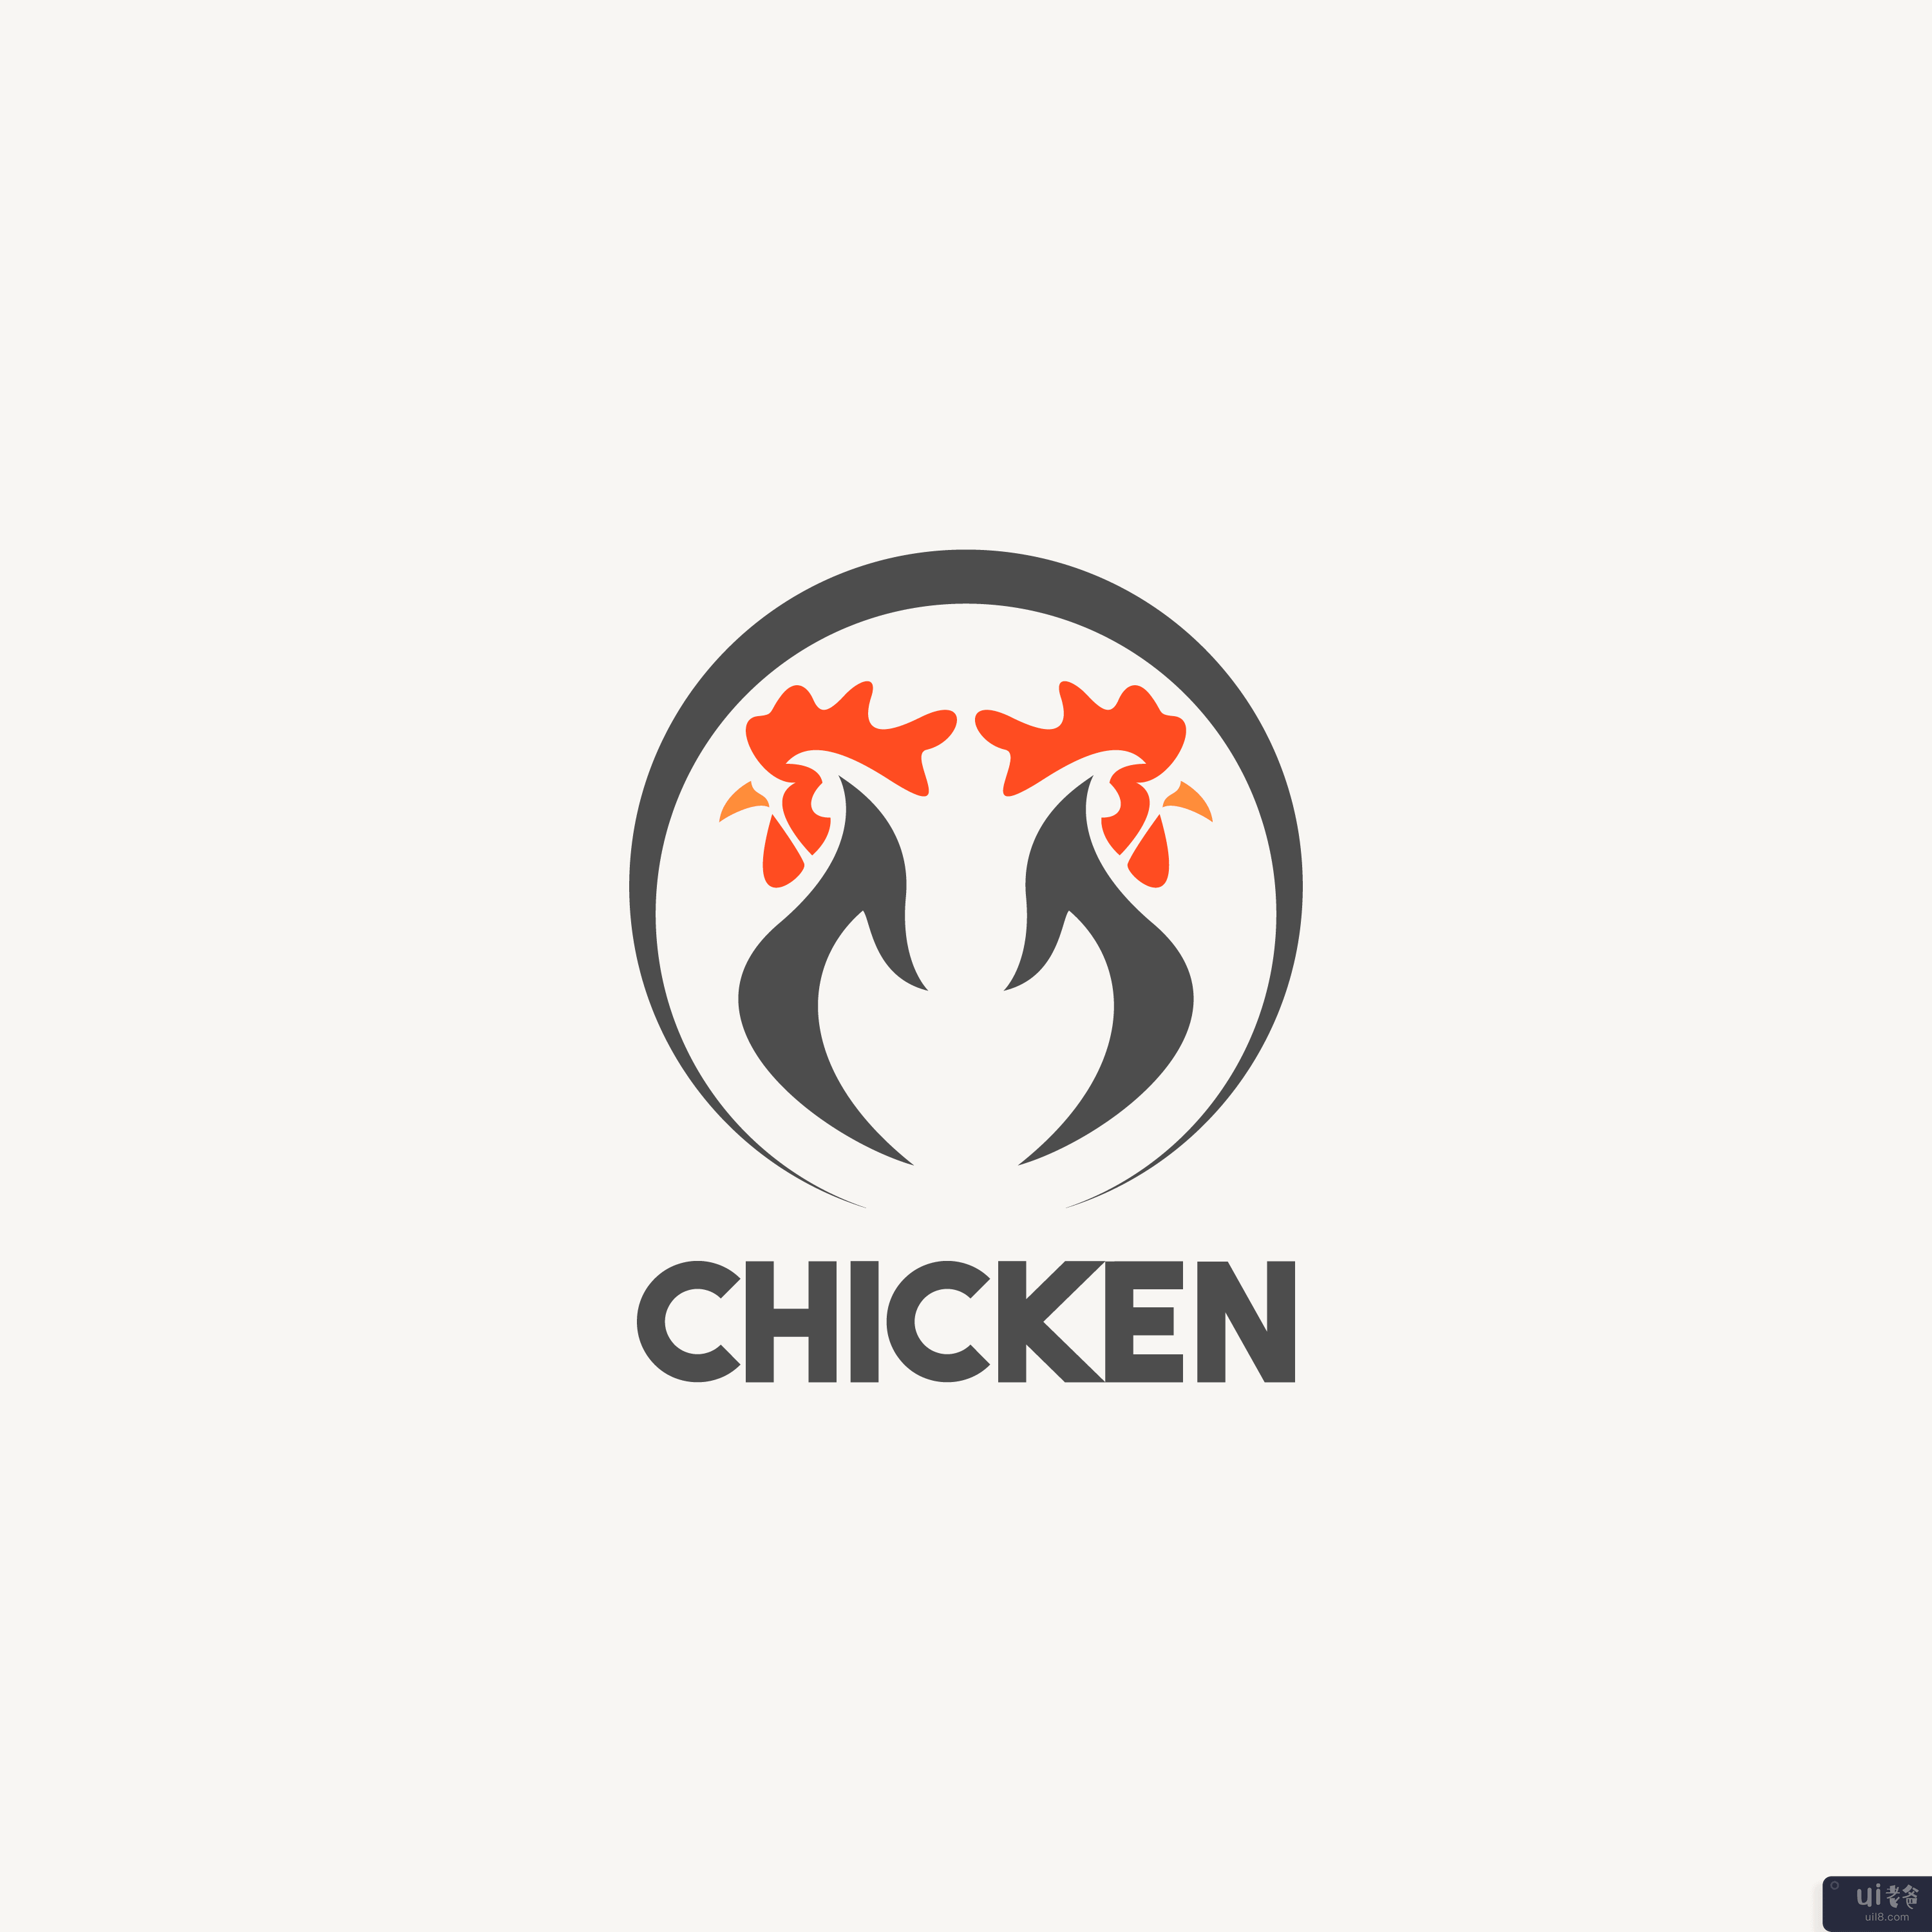 鸡标志图标模板(Chicken logo icon template)插图